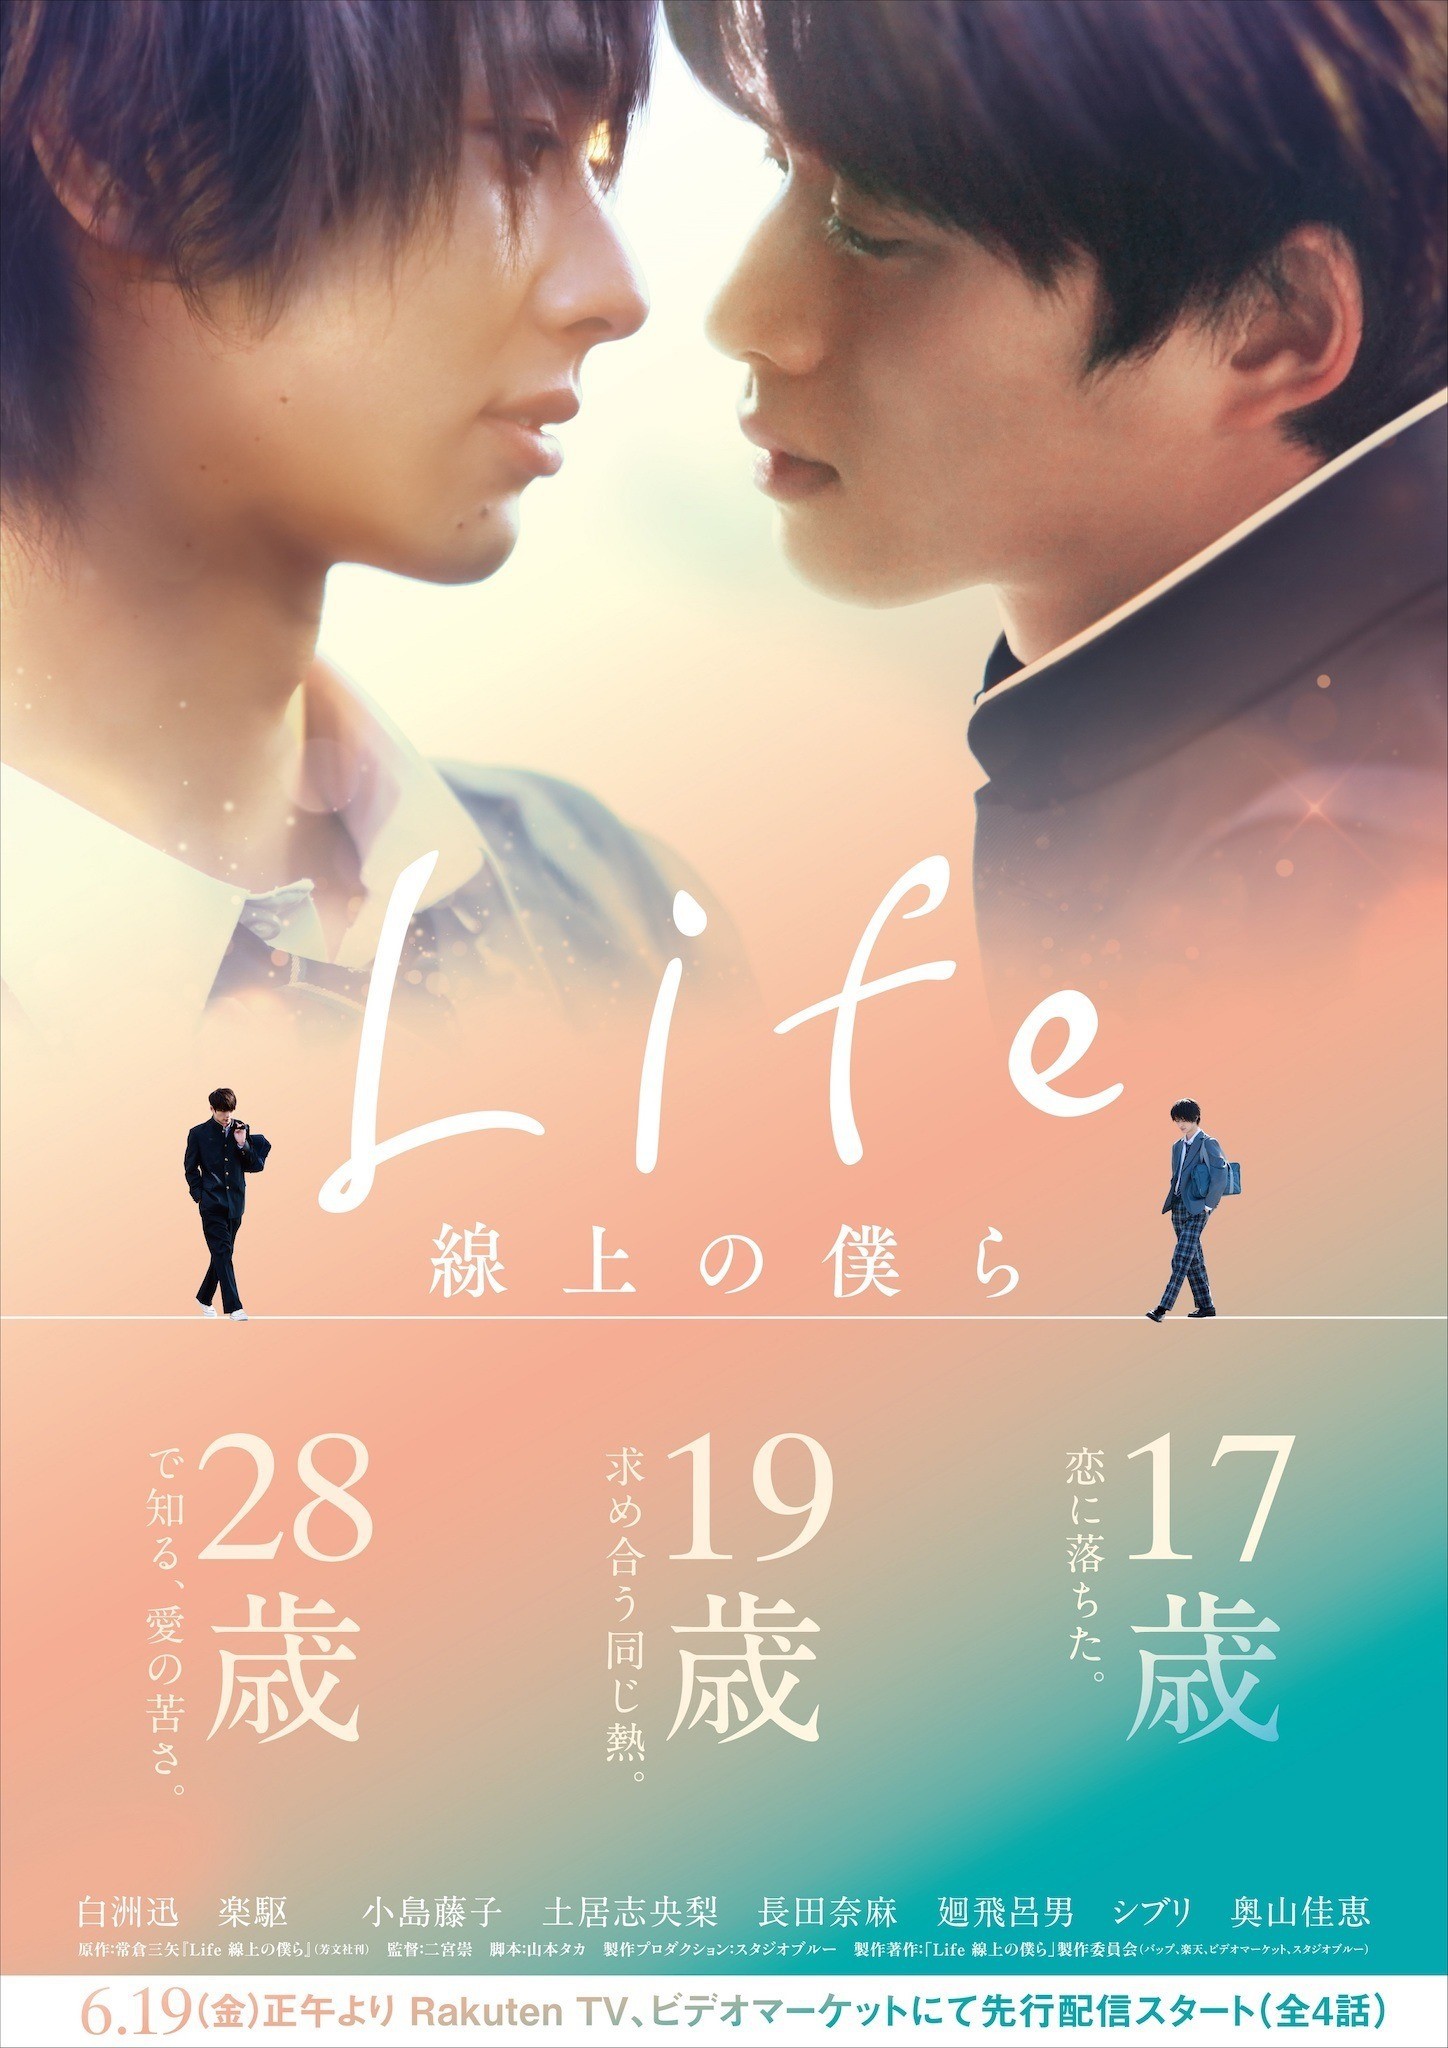 Phim Boylove Life Senjo no Bokura tung hình ảnh nụ hôn đầu của hai nhân vật chính